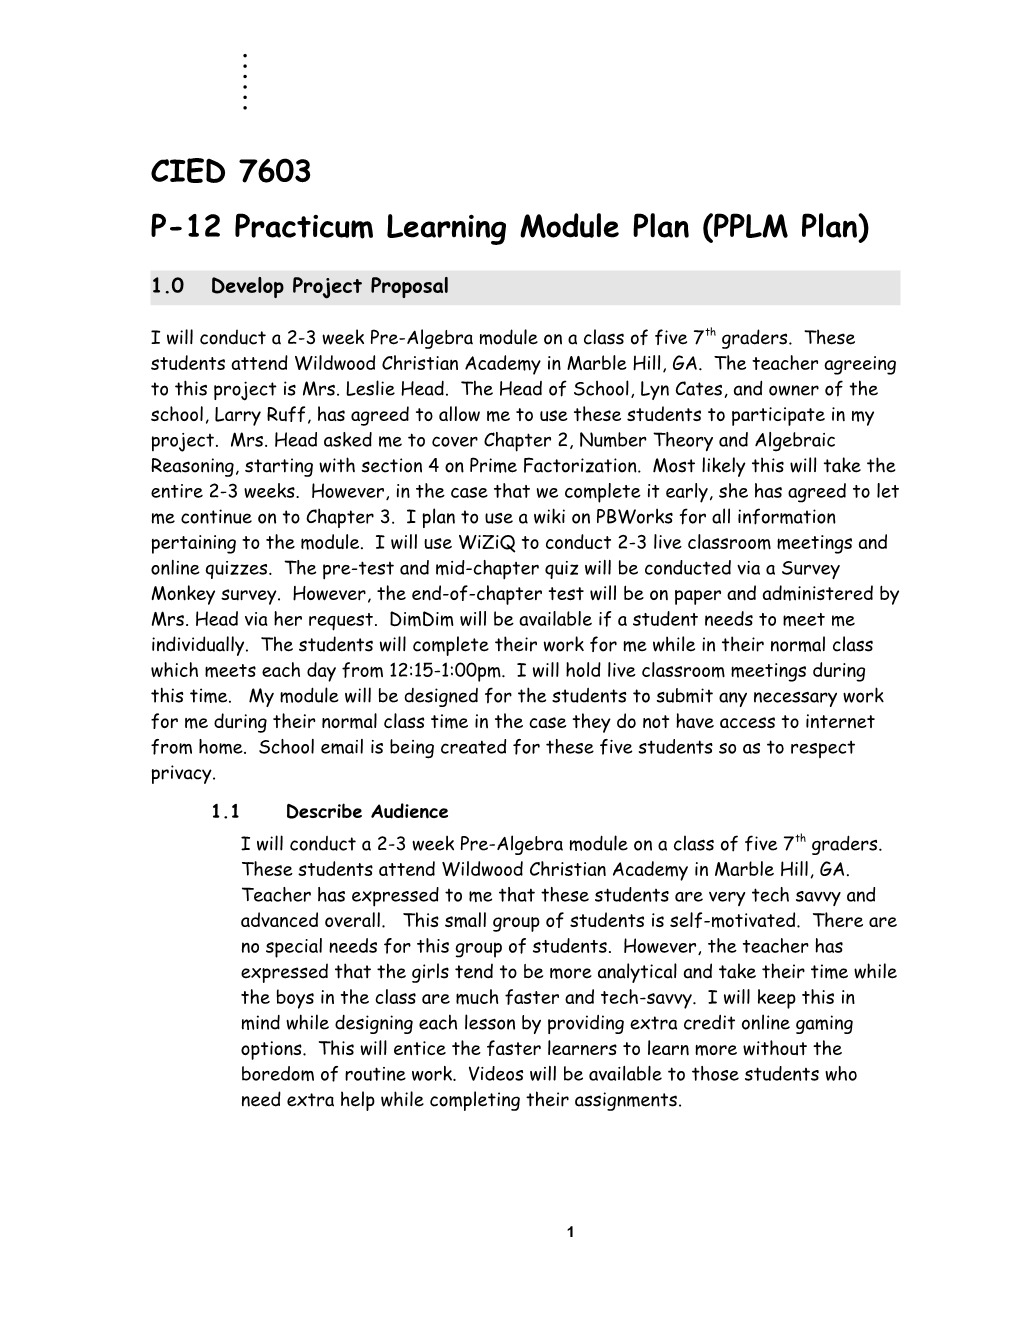 P-12 Practicum Learning Module Plan (PPLM Plan)